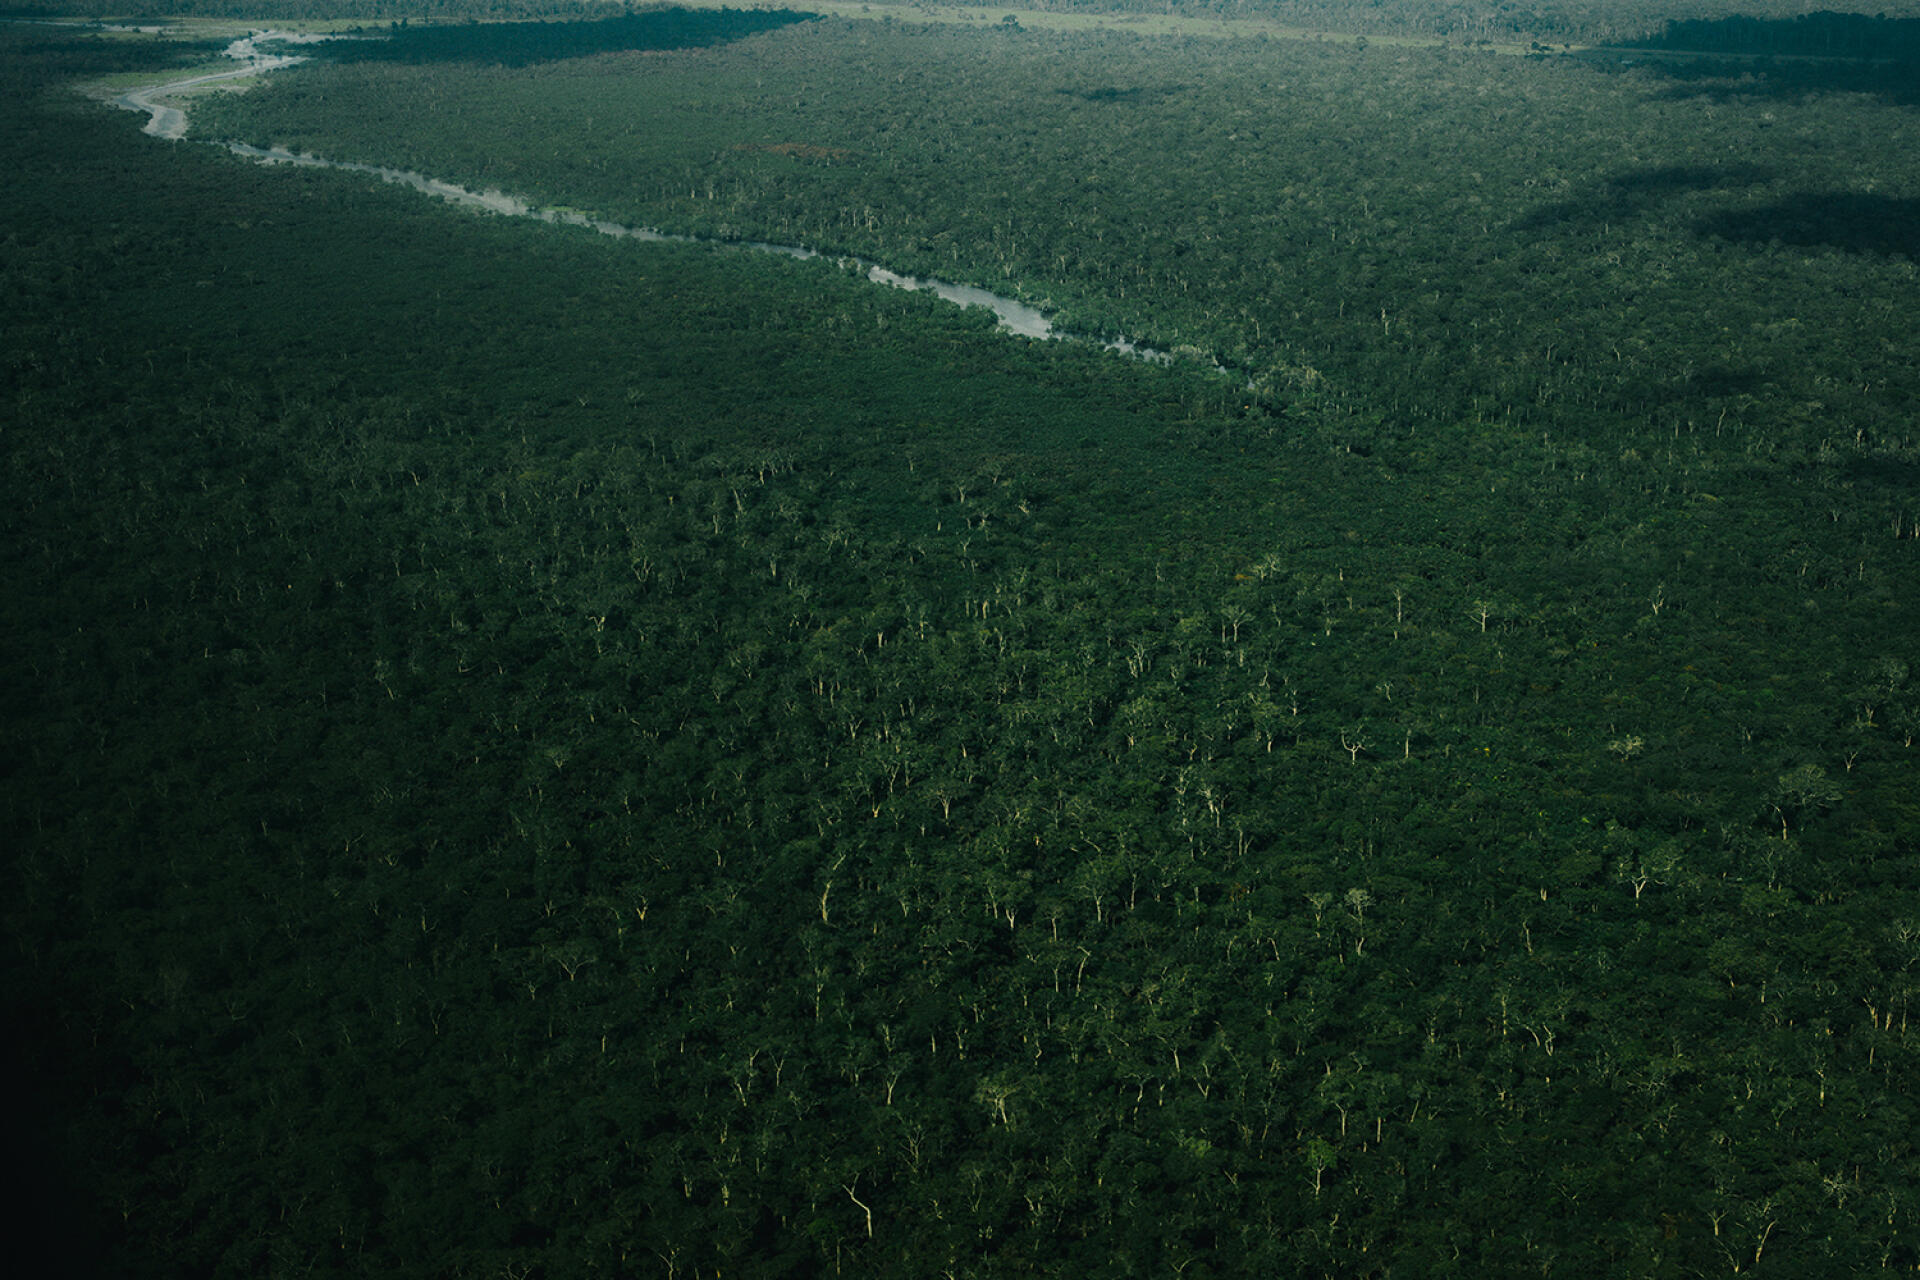 La forêt de la province de l’Equateur, près de la ville de Mbandaka, en République démocratique du Congo. Toutes les photos ont été prises en octobre 2021.